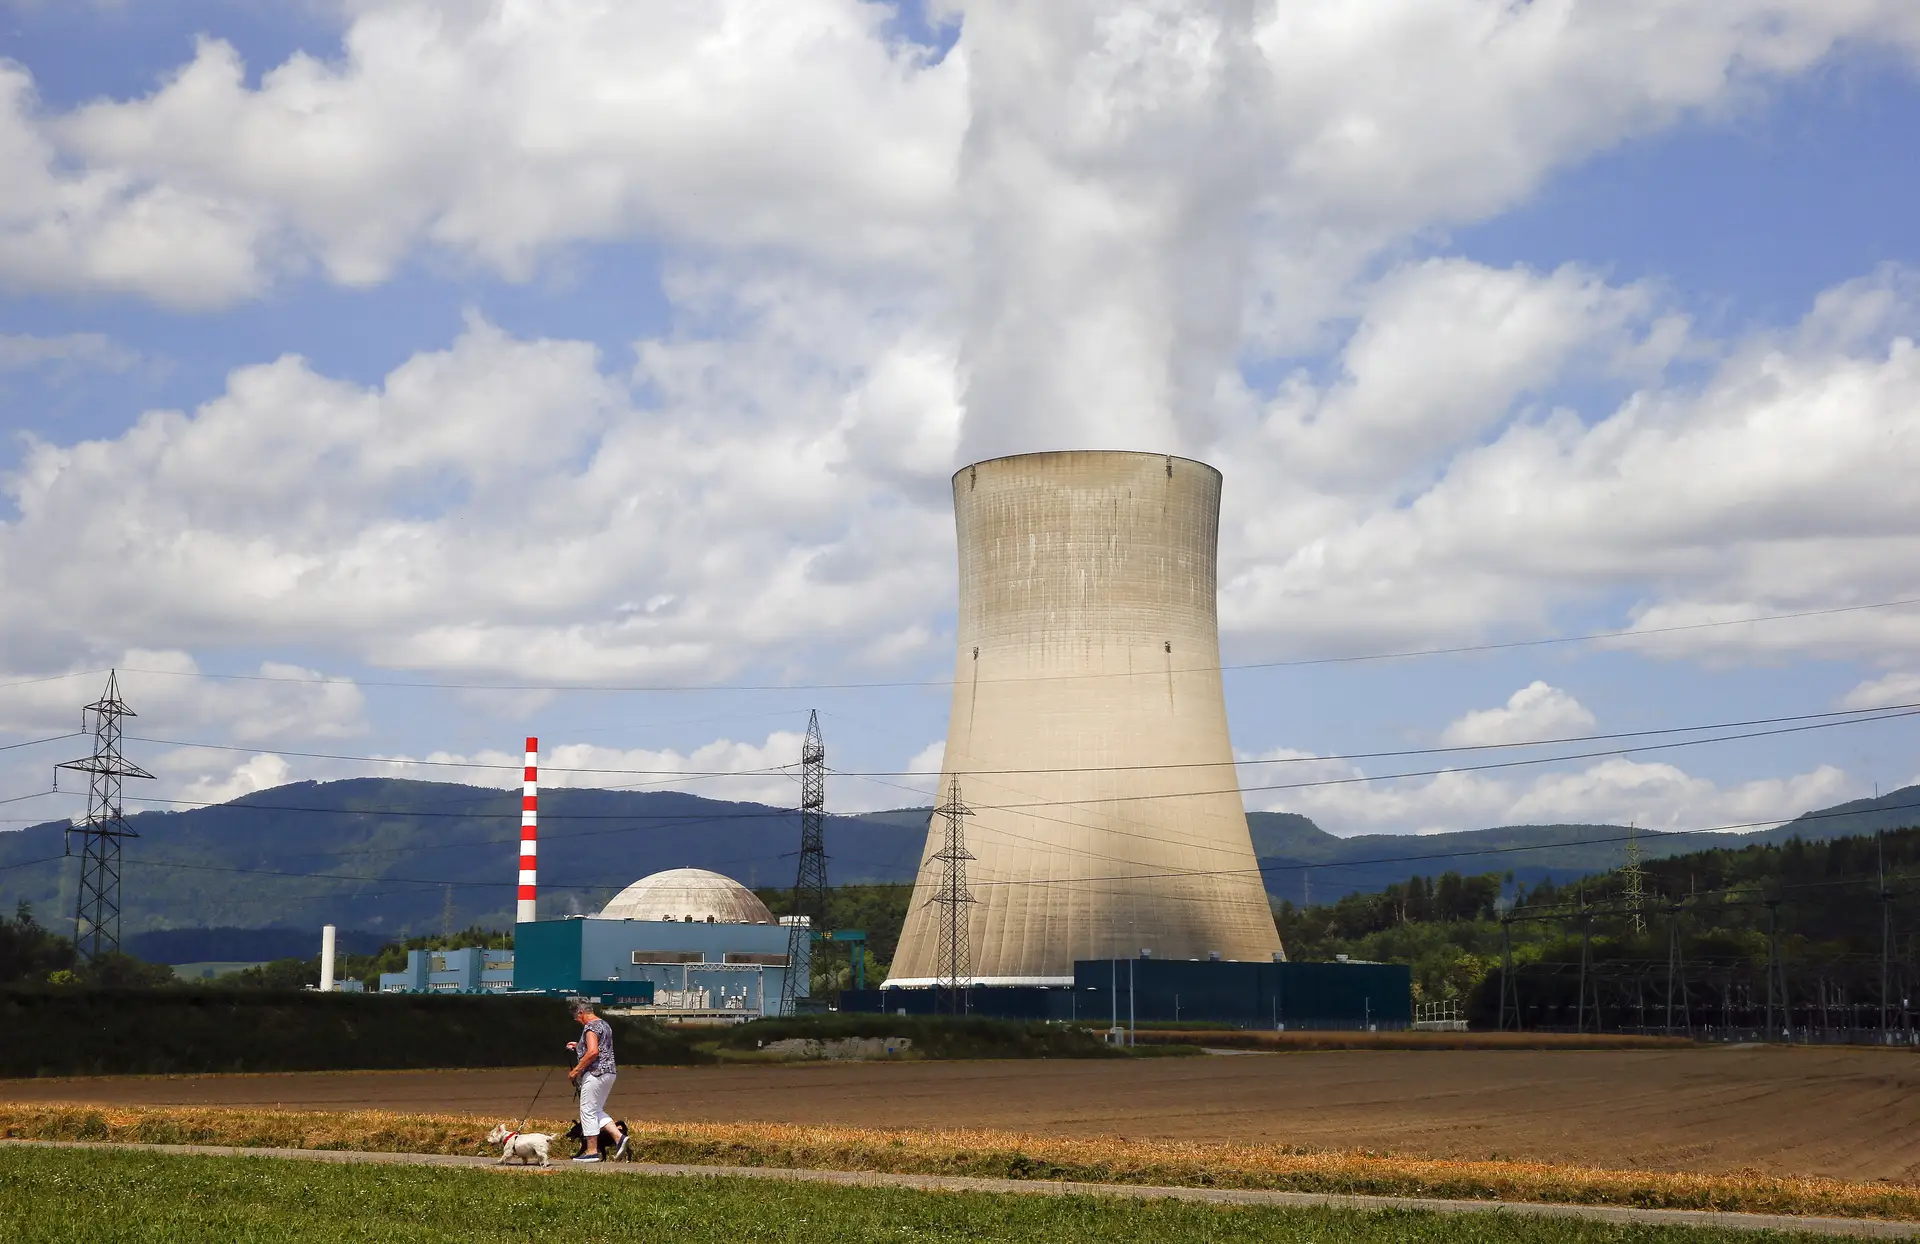 Polónia terá energia nuclear a partir de 2033 e aposta na indústria do carvão